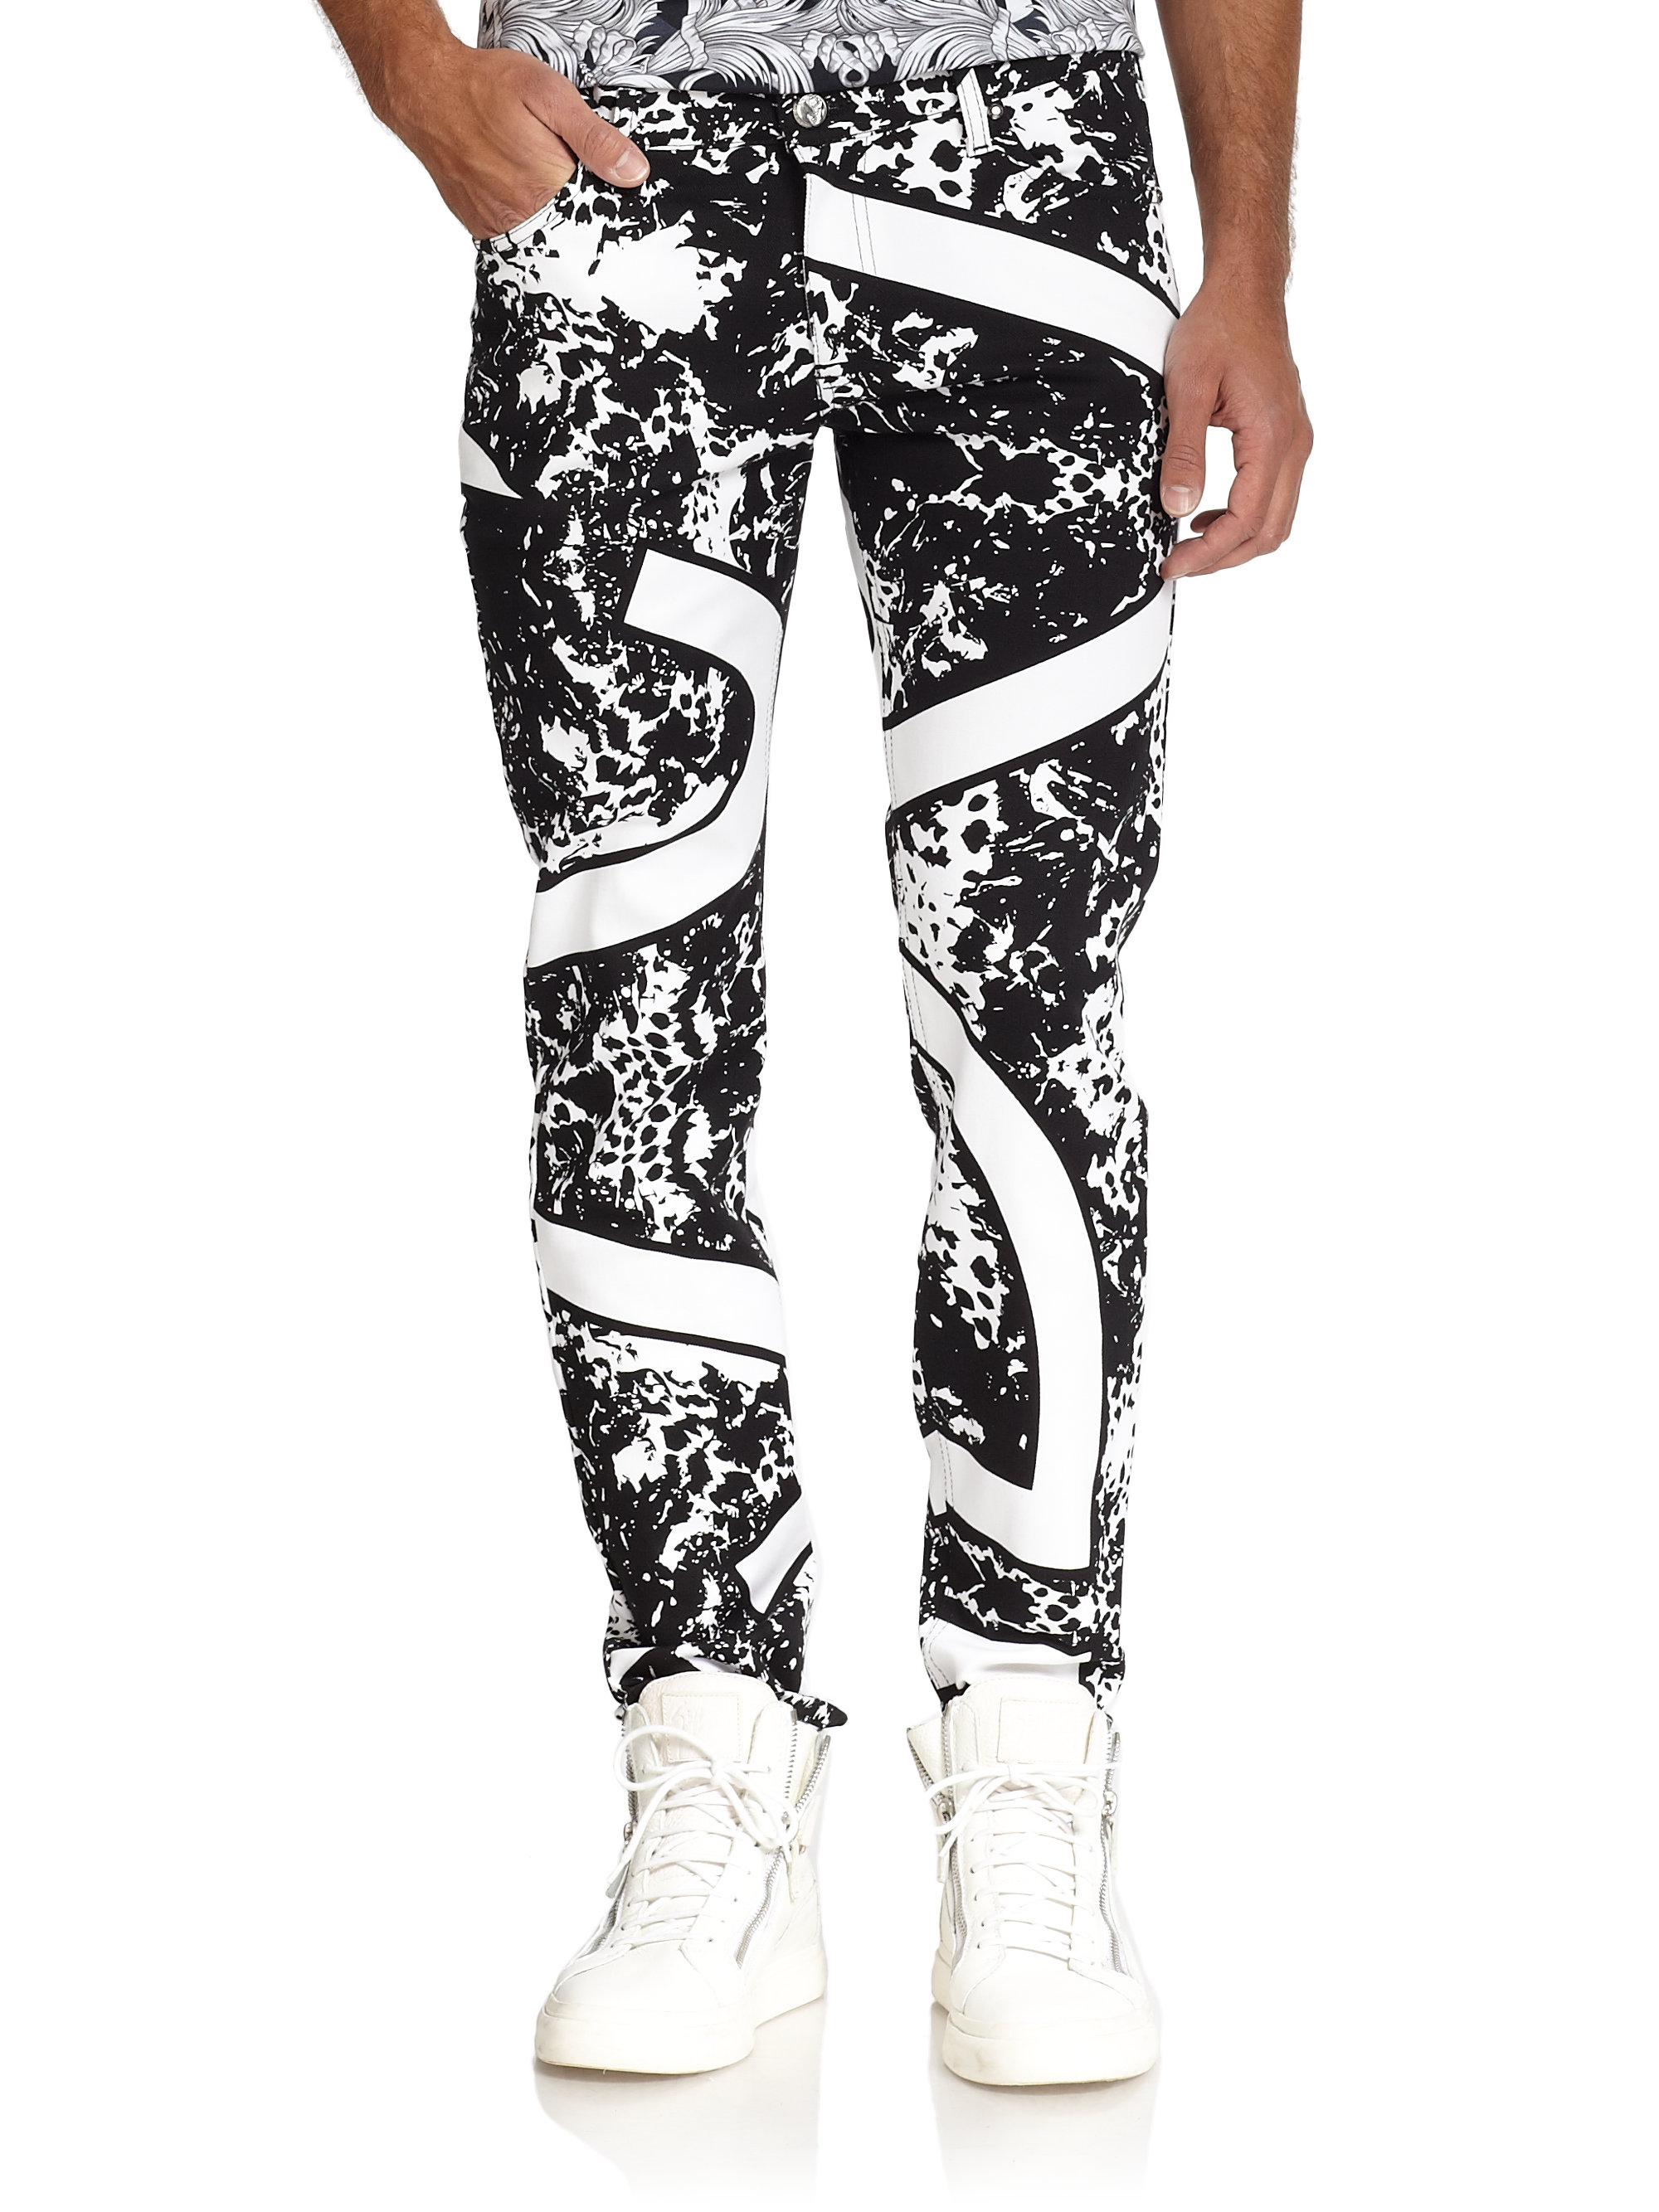 Lyst - Versace Jeans Splatter & Stripe Print Jeans in White for Men